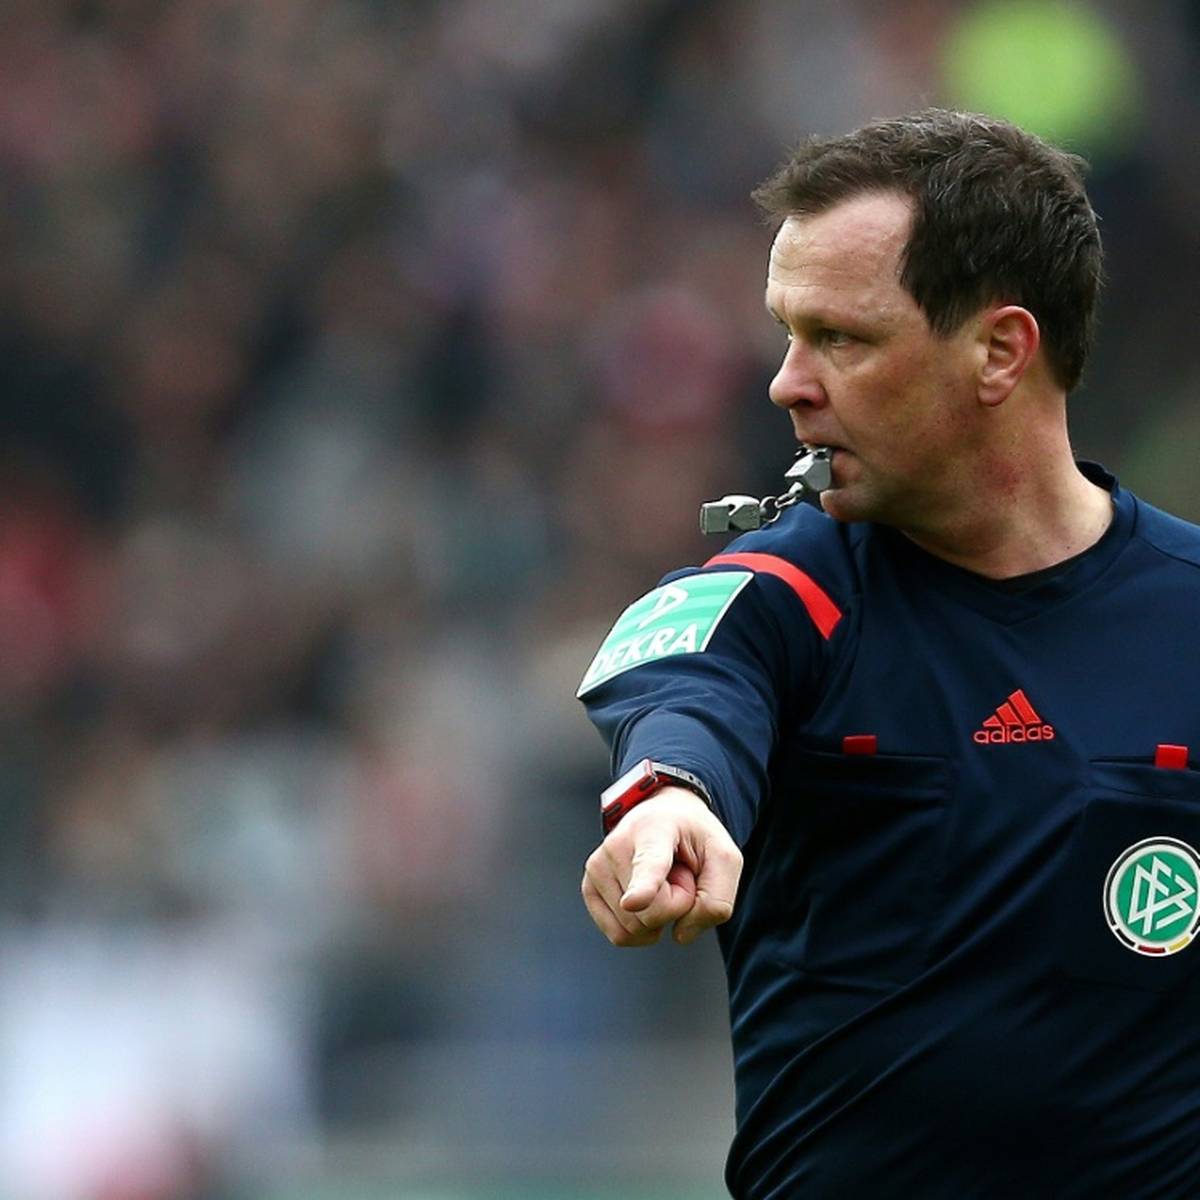 Die deutschen Schiedsrichter wollen sich bei der Frage nach dem Handspiel im Finale der Frauenfußball-EM nicht festlegen. Peter Sippel spricht von einer „kleinteiligen Situation“.